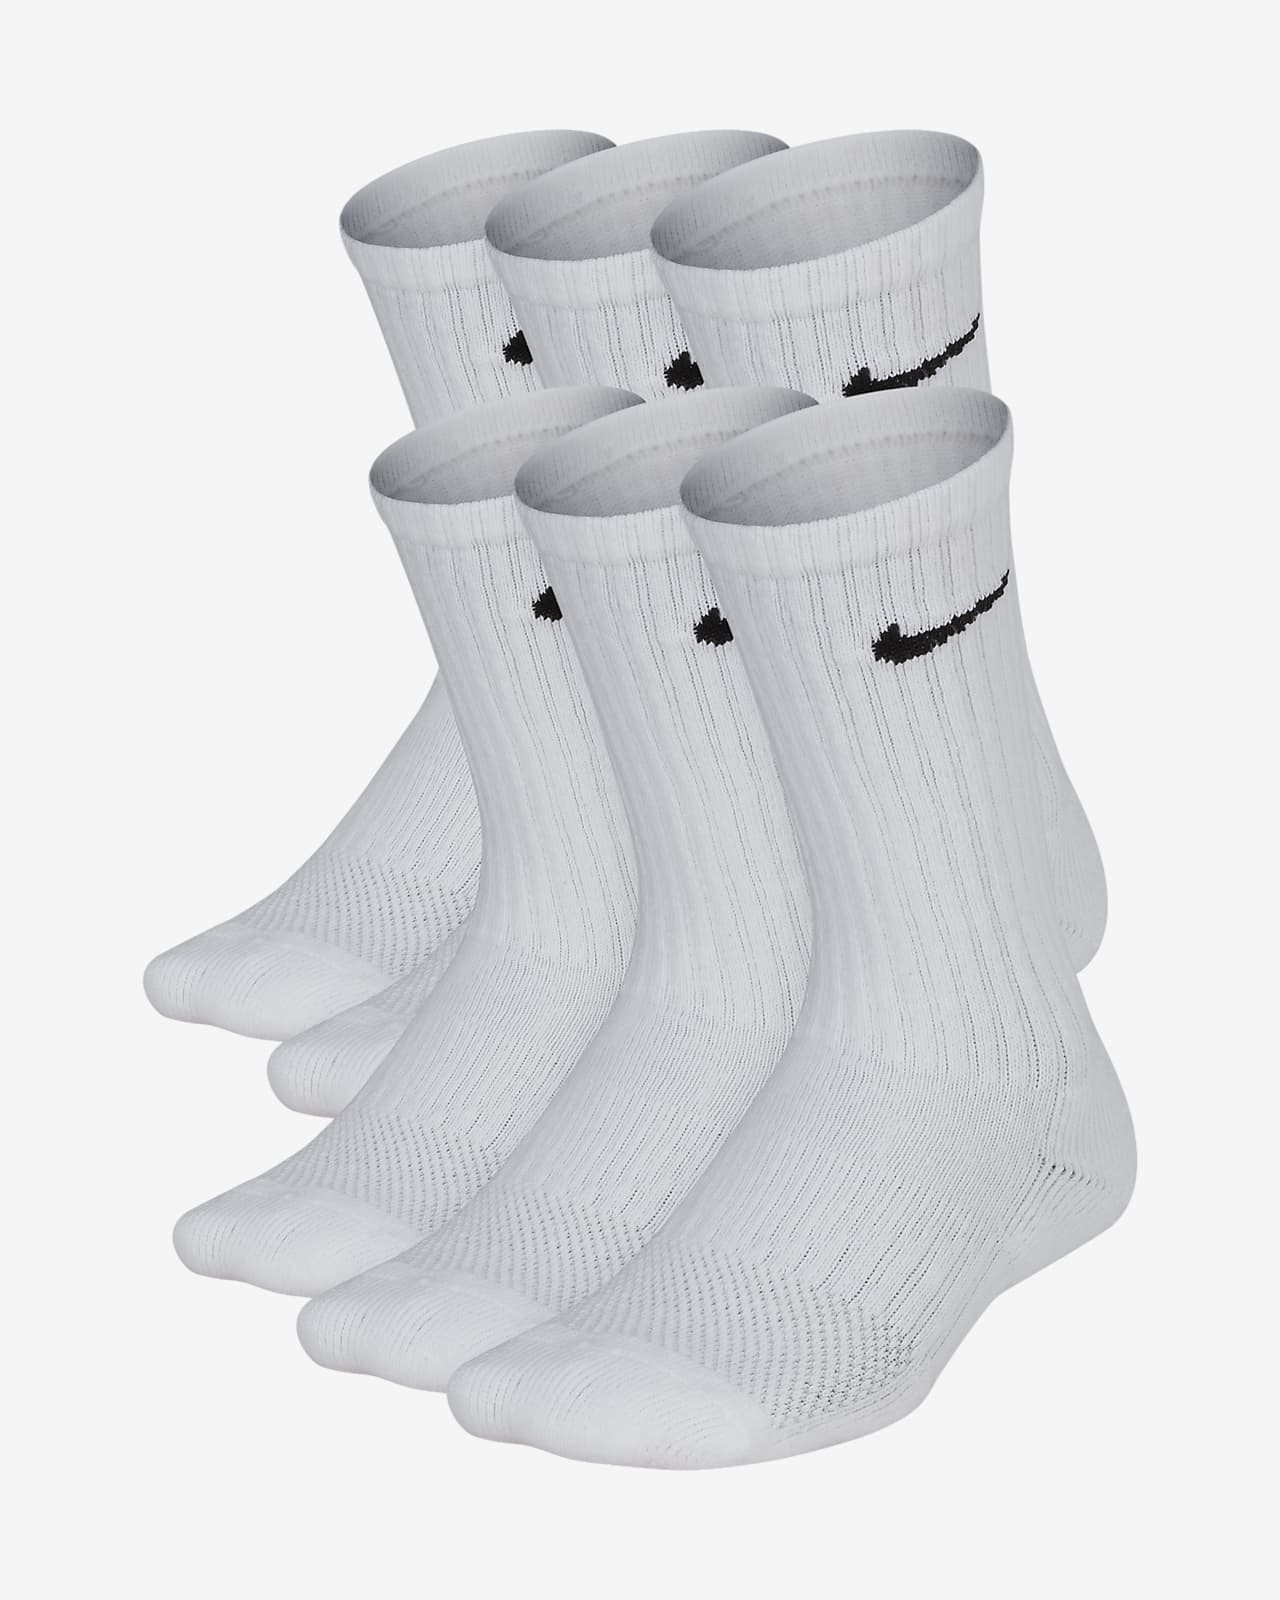 new nike sock